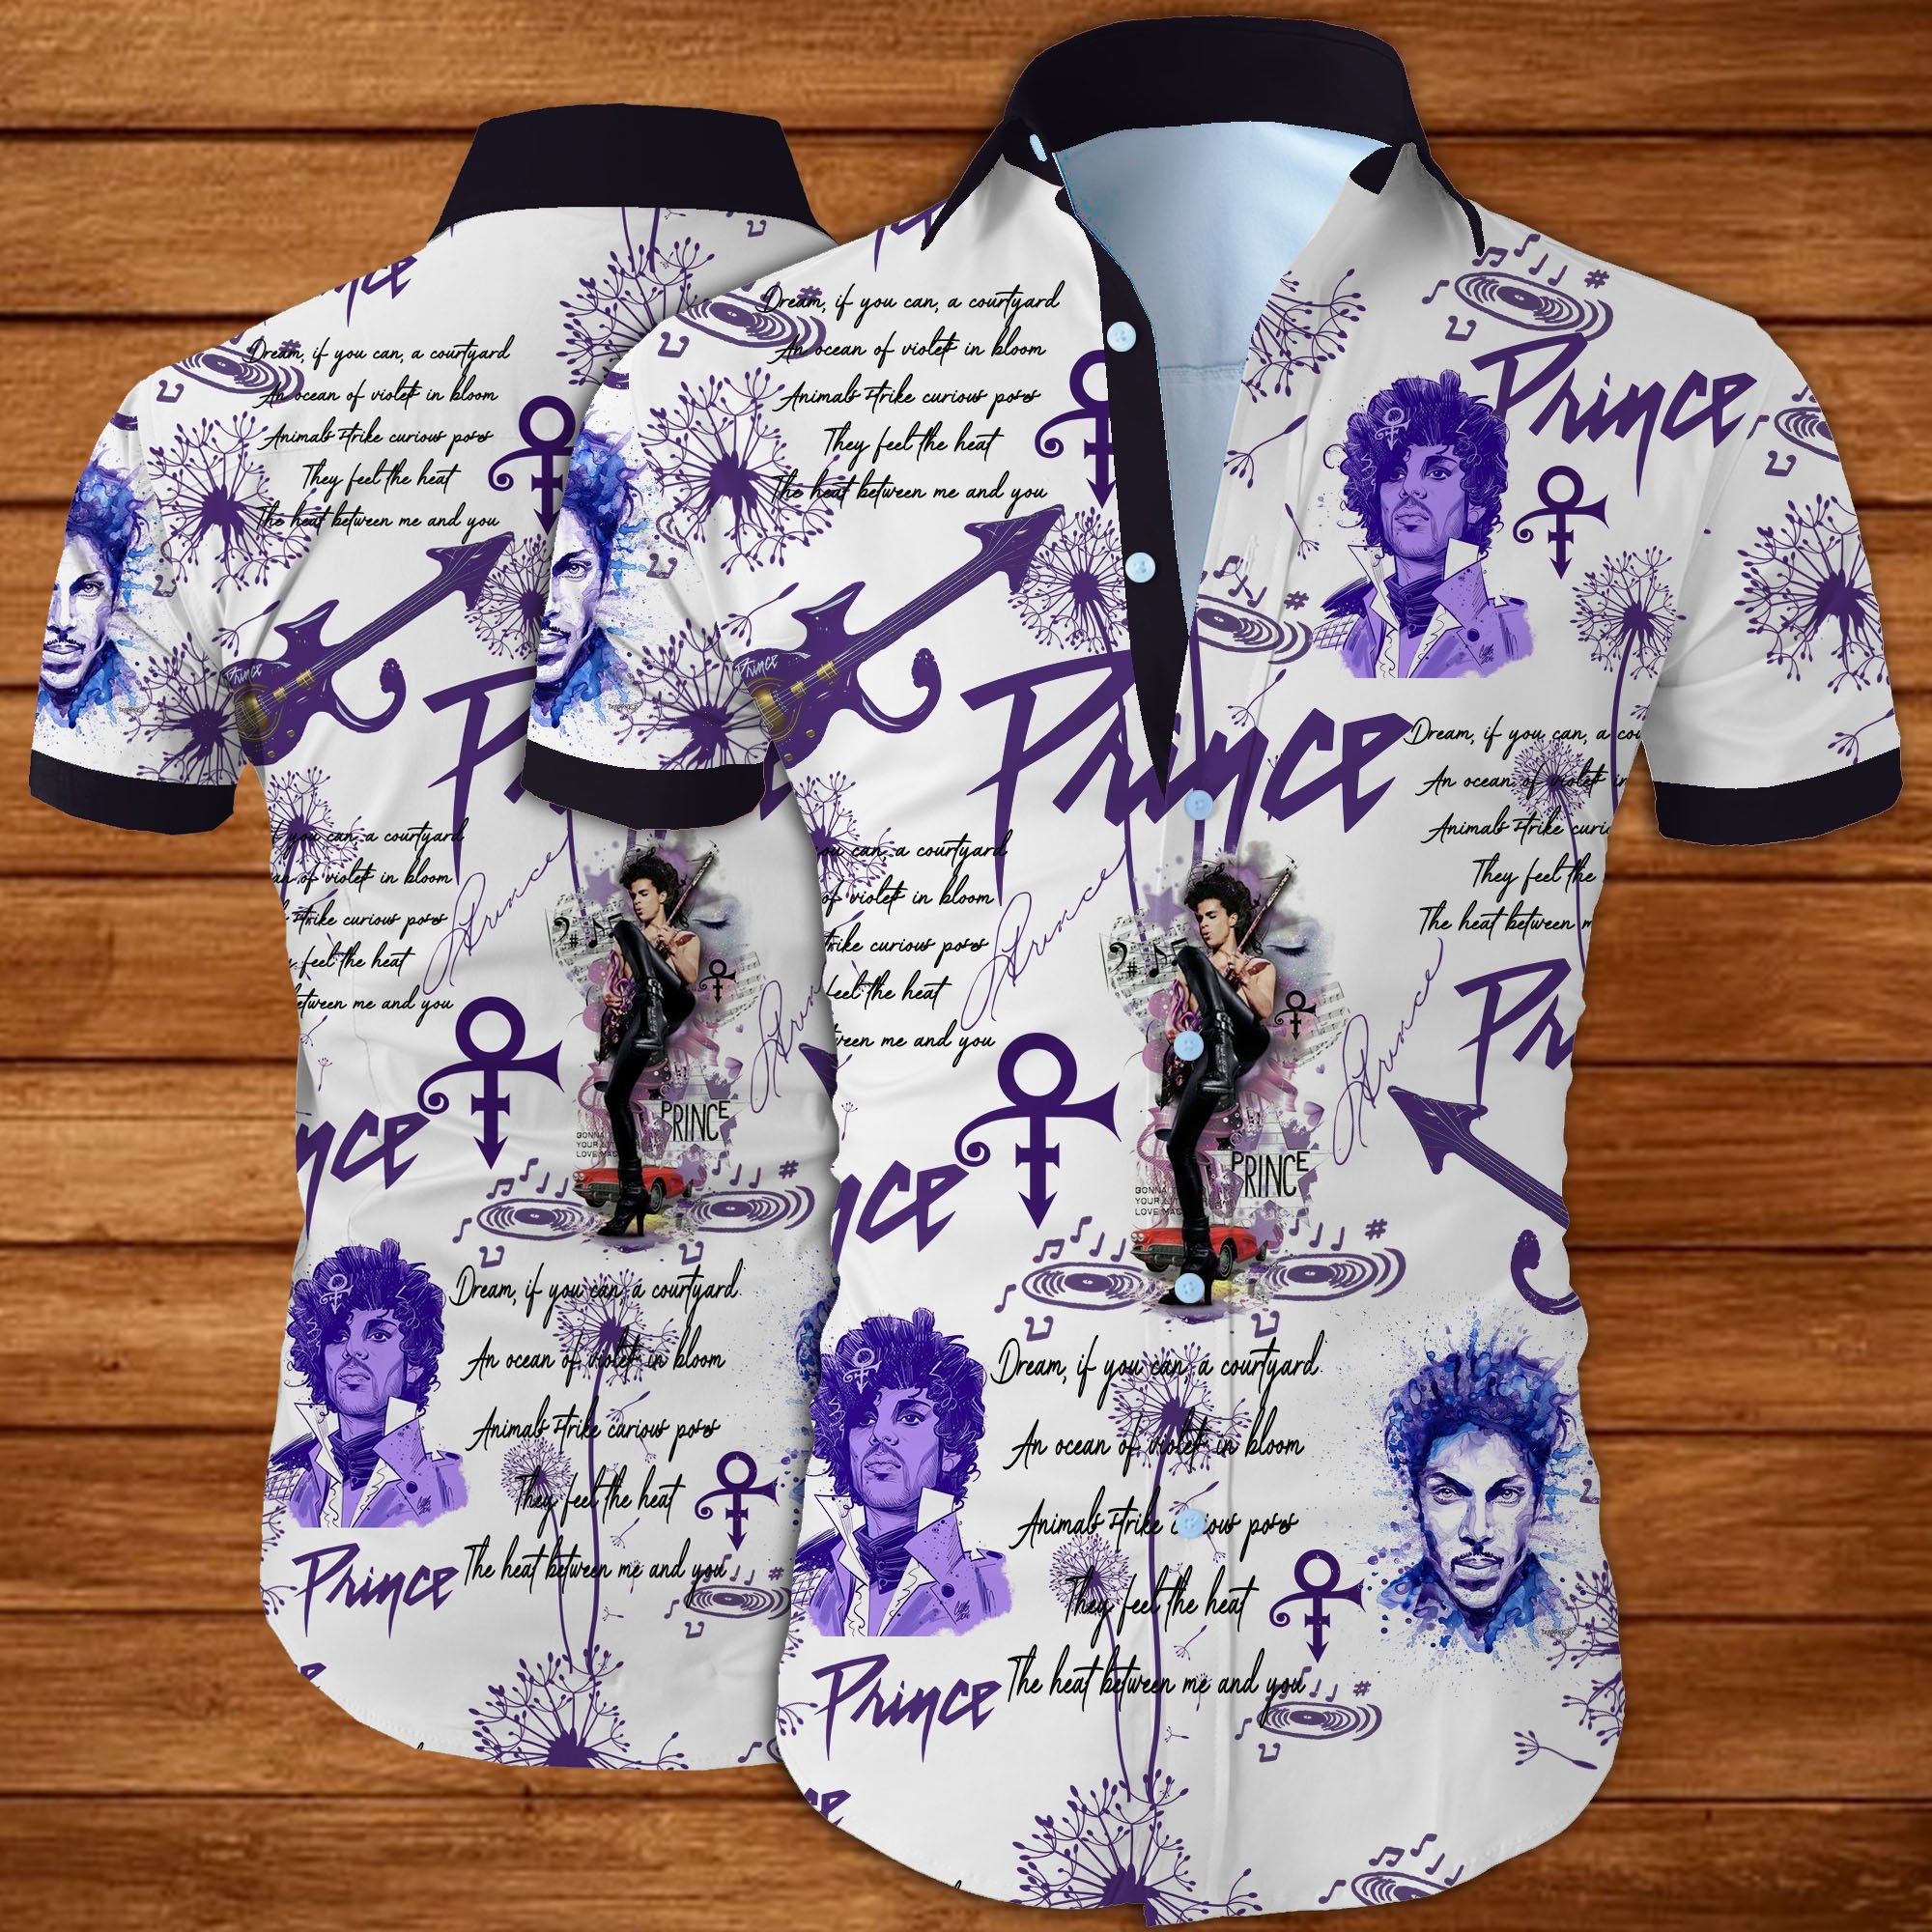 Prince all over printed hawaiian shirt